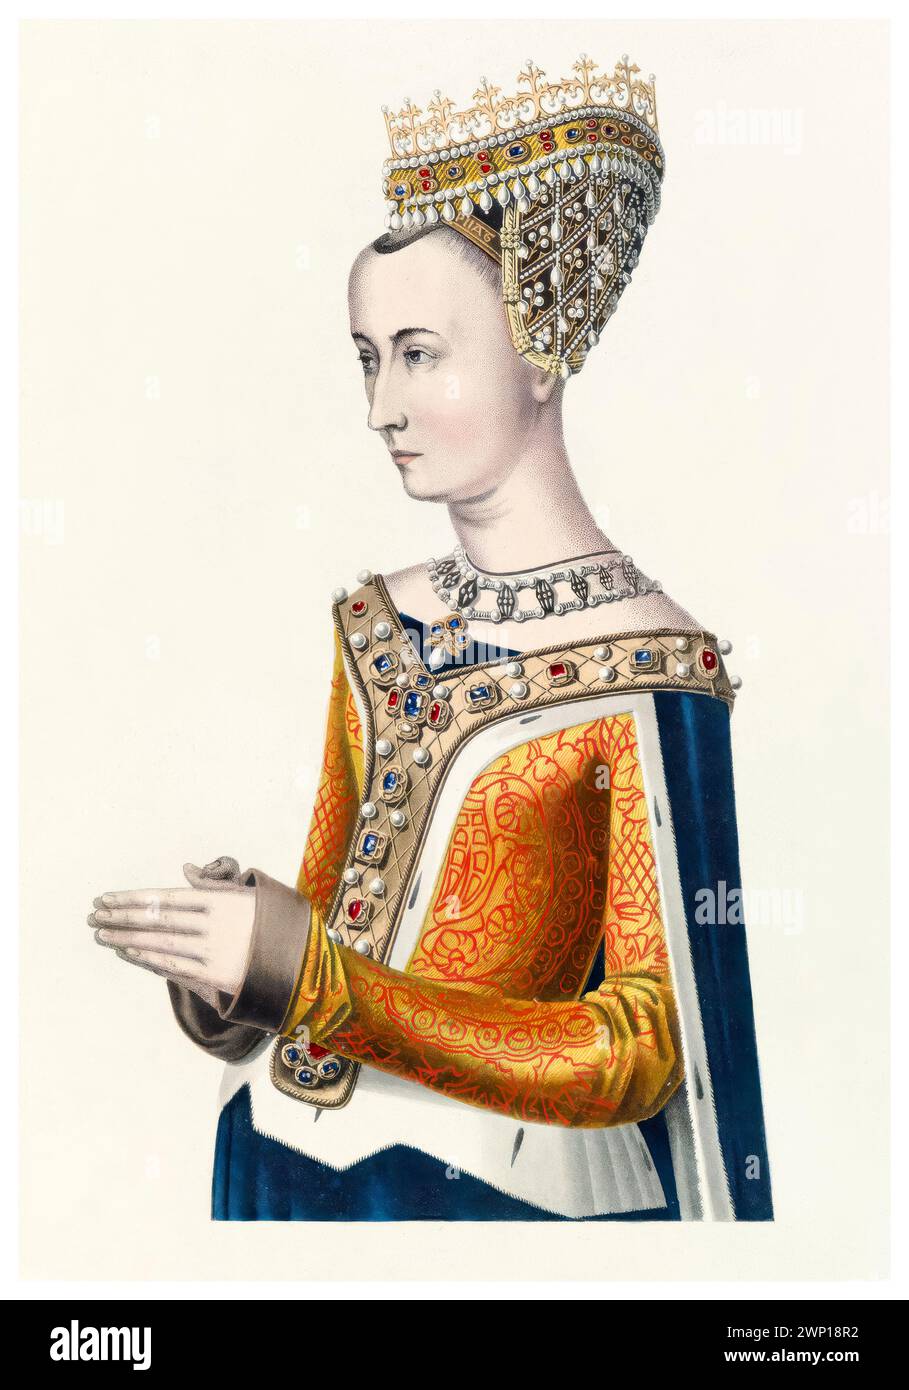 Margarete von Dänemark (1456–1486), Königin von Schottland 1469-1486 durch Heirat mit König Jakob III., Porträt-Aquatint-Druck von Henry Shaw, um 1843 Stockfoto